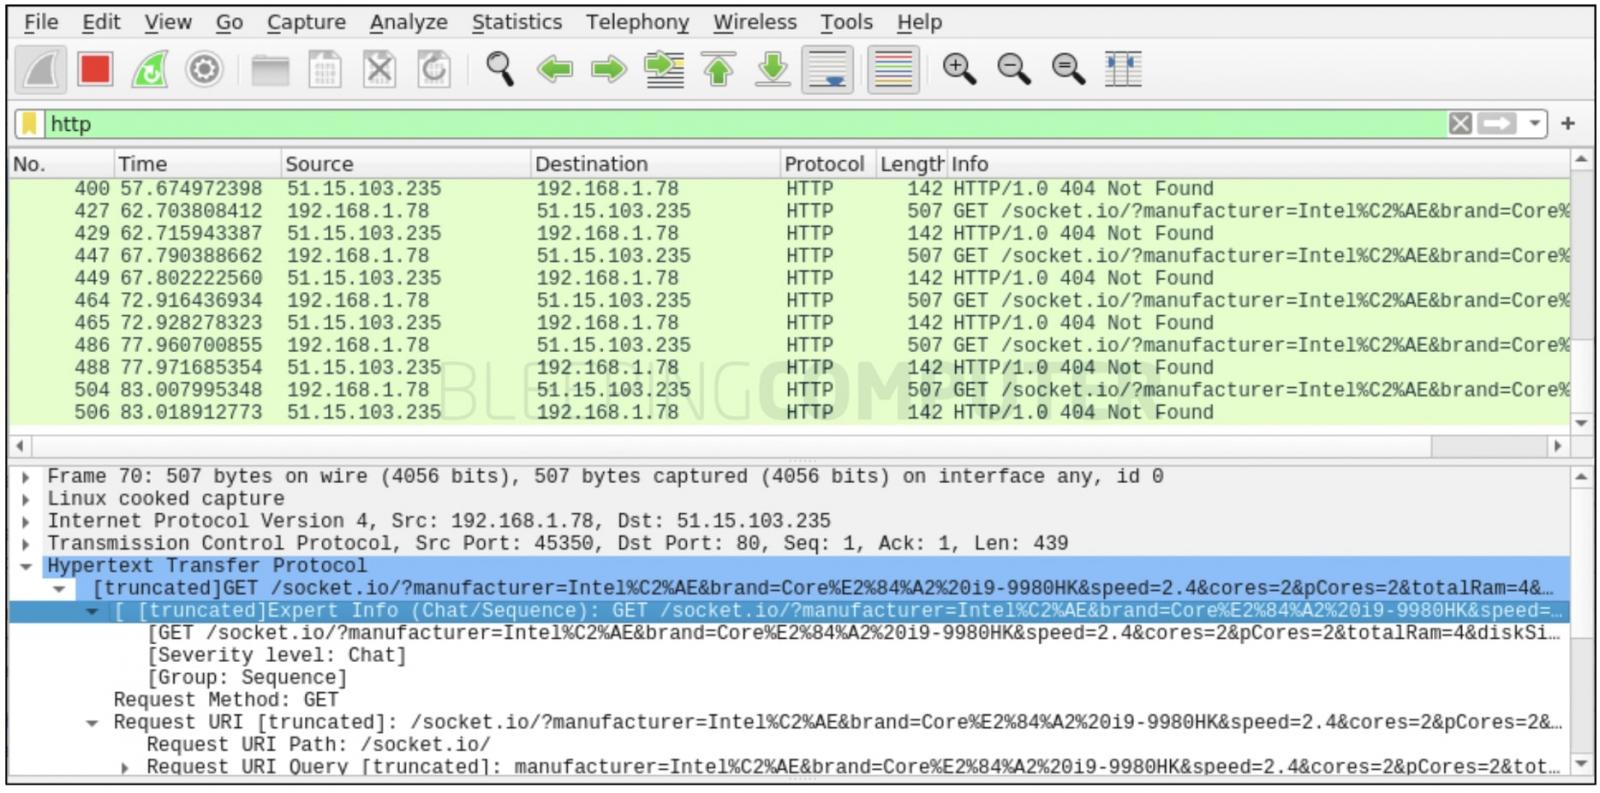 wireshark capture for run malware